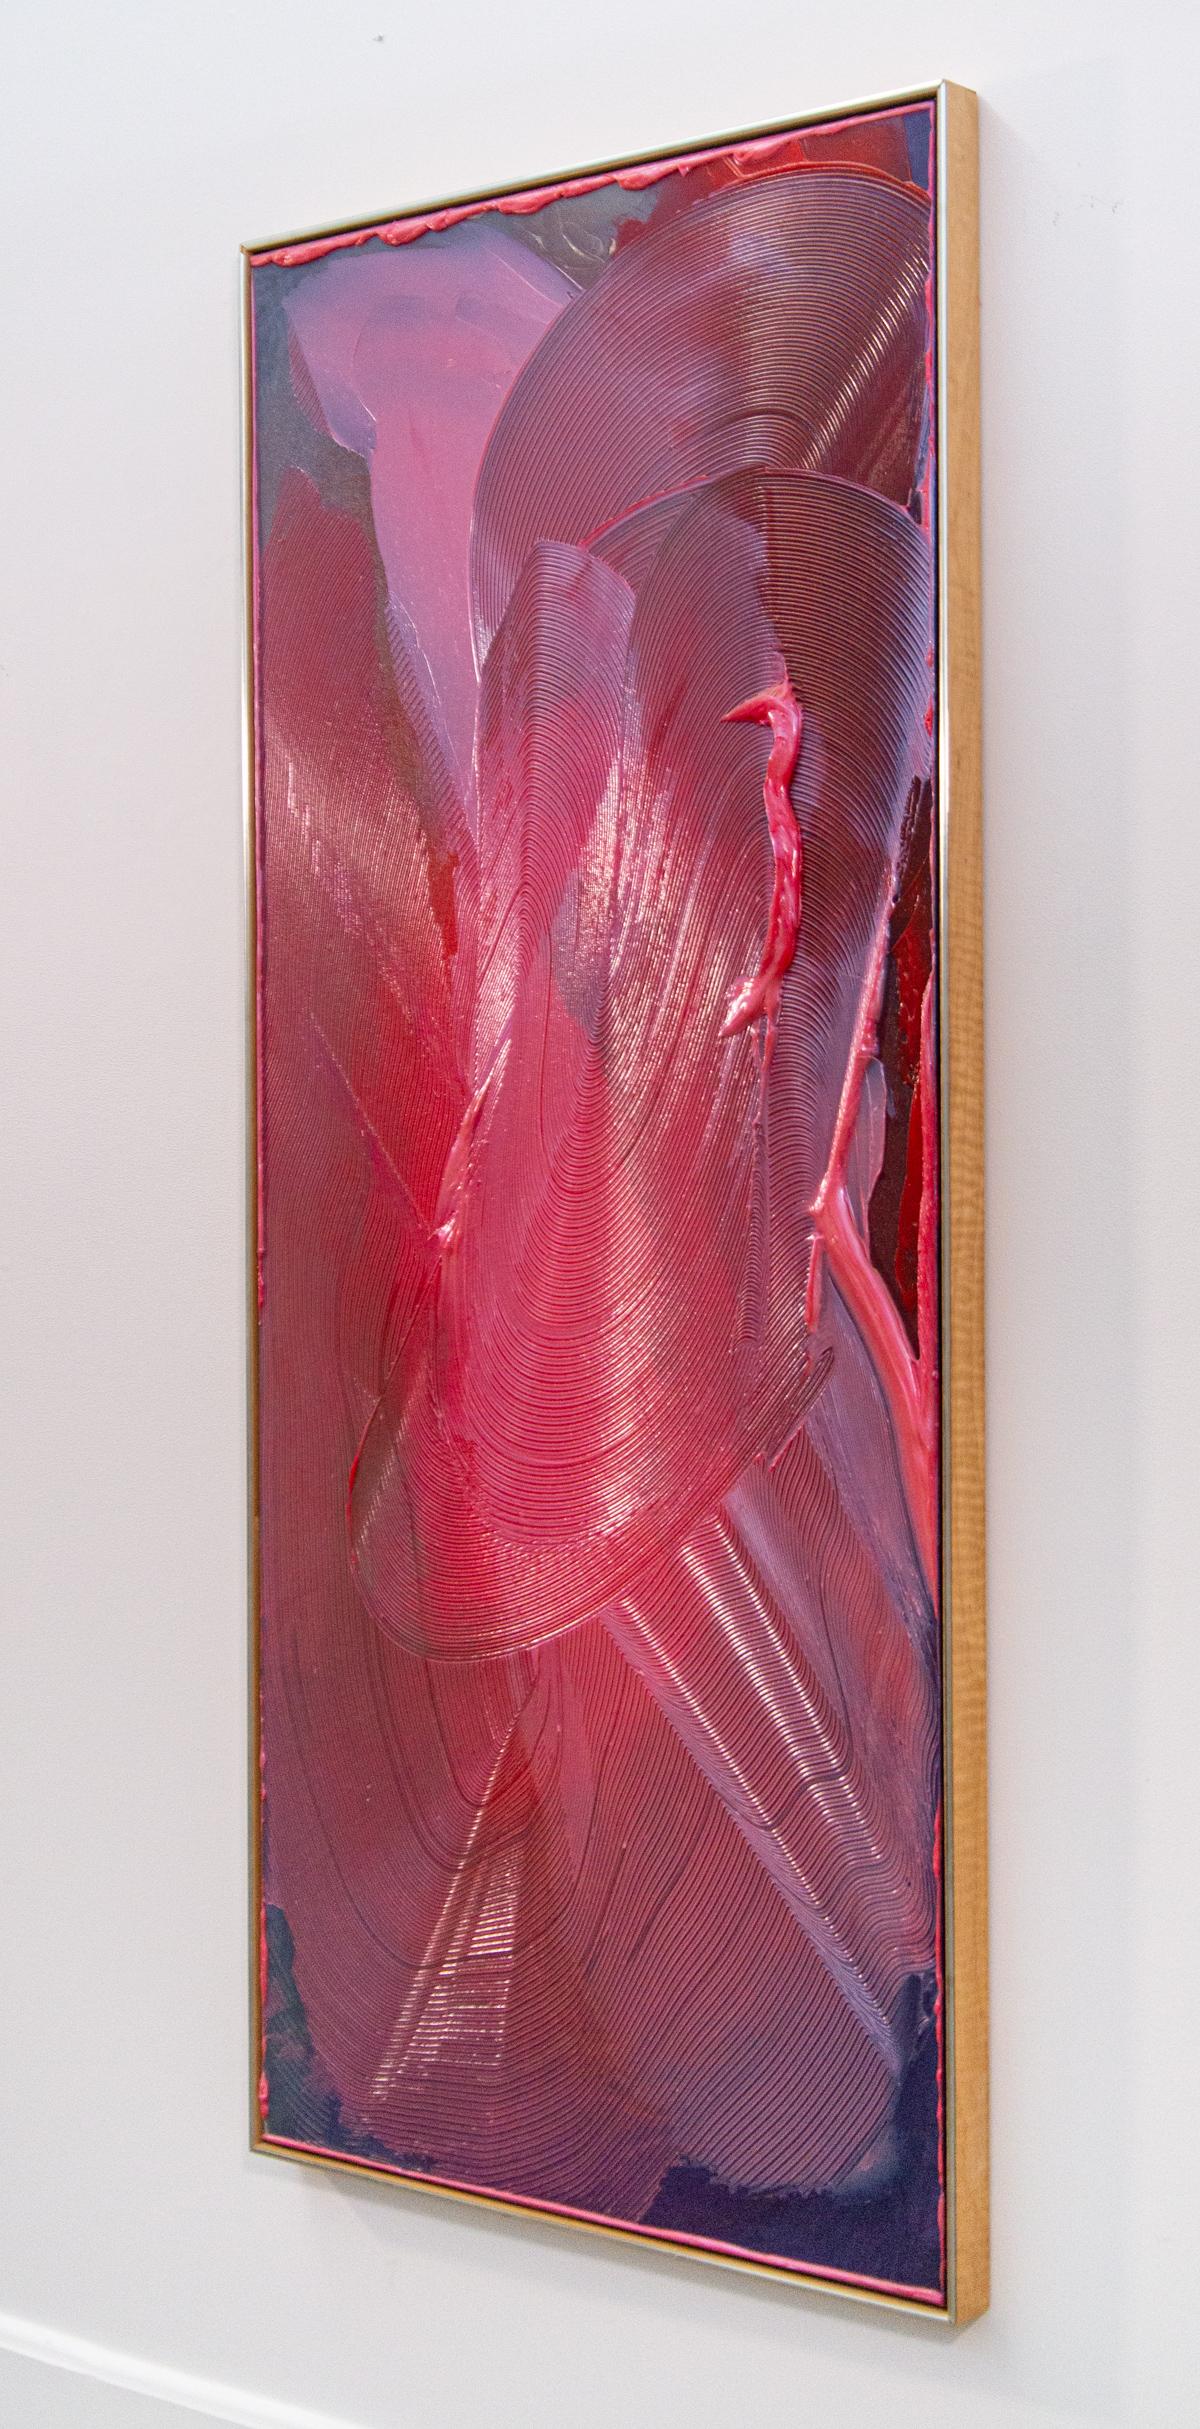 In diesem dynamischen Werk des zeitgenössischen Malers Joseph Drapell tanzen Strudel aus leuchtenden Farben - Rosa, Violett und Pflaume - um die Leinwand. Der in Tschechien geborene Künstler schafft einzigartig schöne Gemälde, indem er innovative